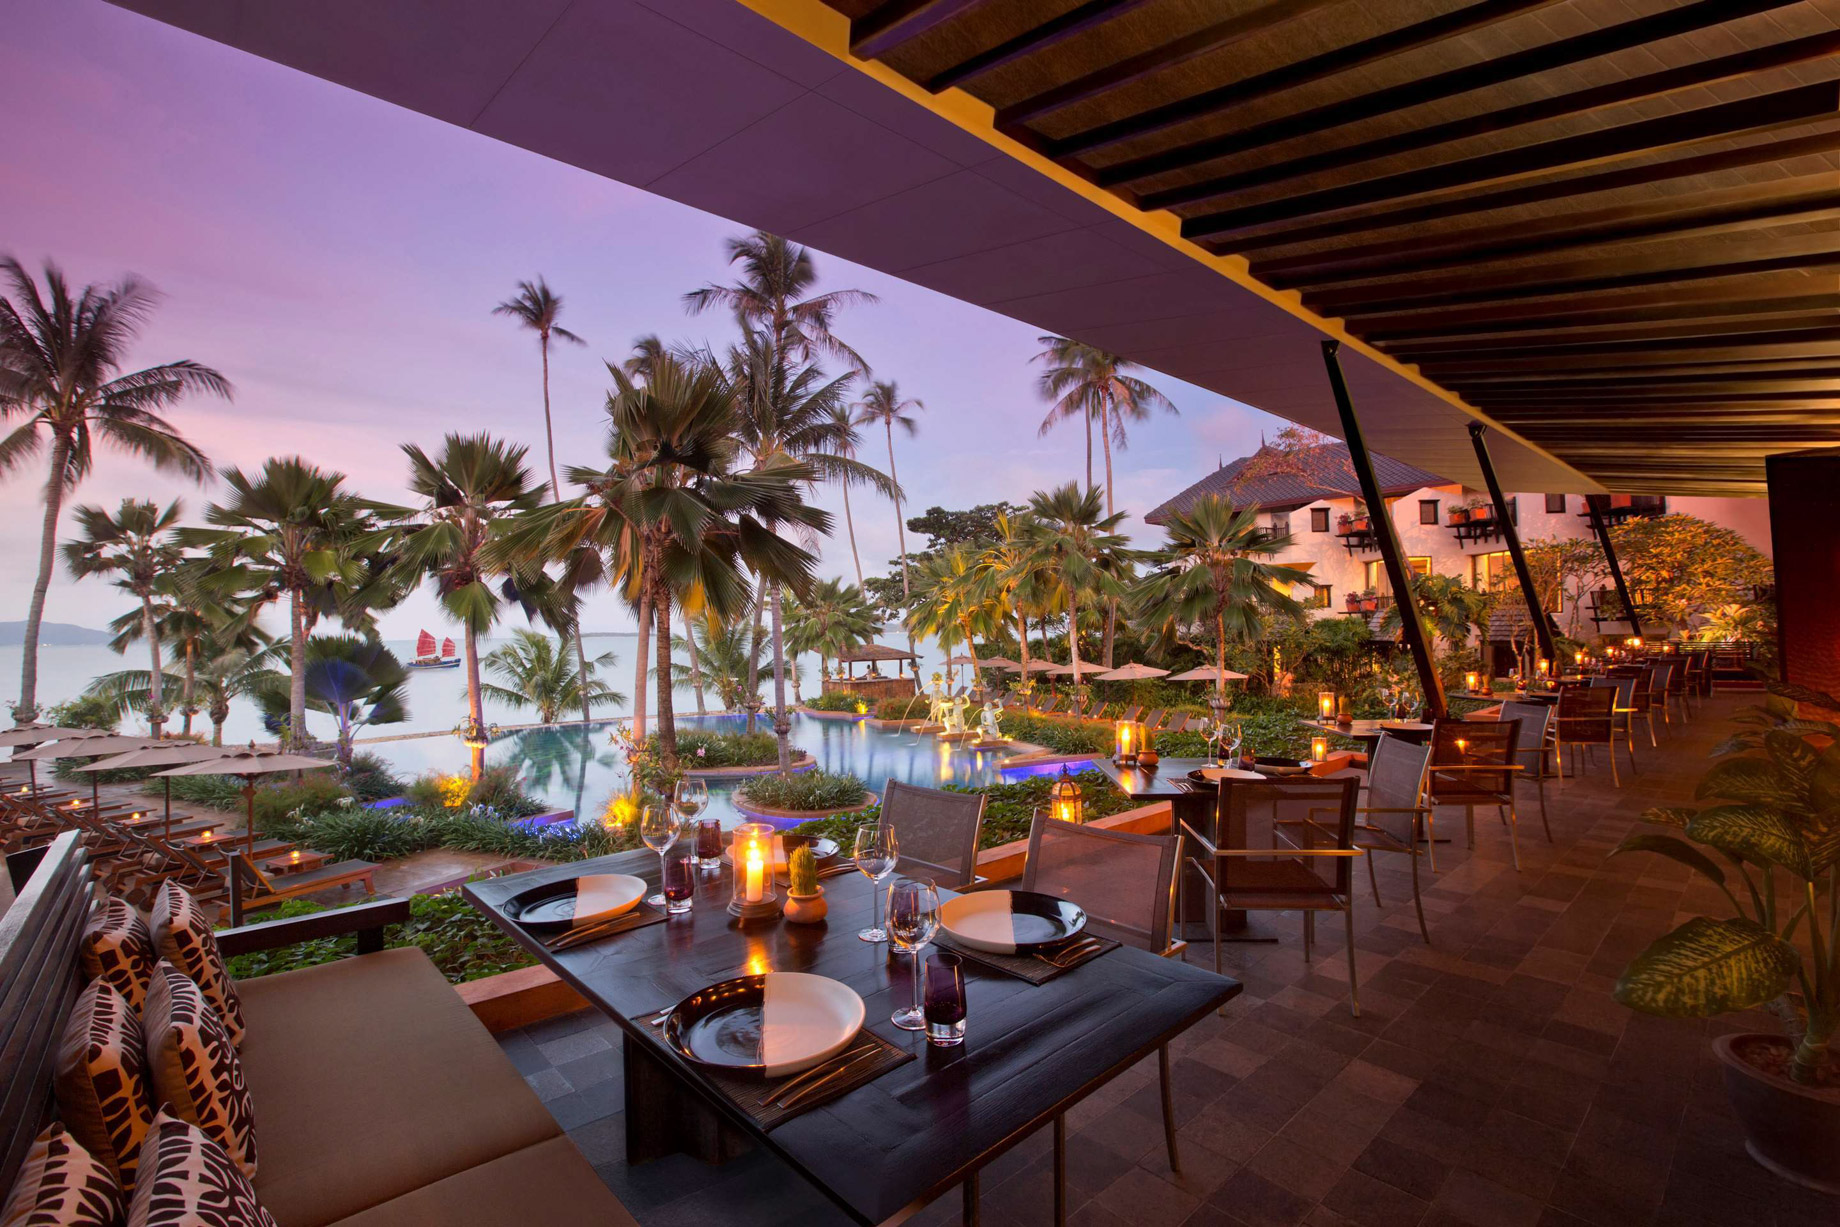 Anantara Bophut Koh Samui Resort – Thailand – Poolside Dining